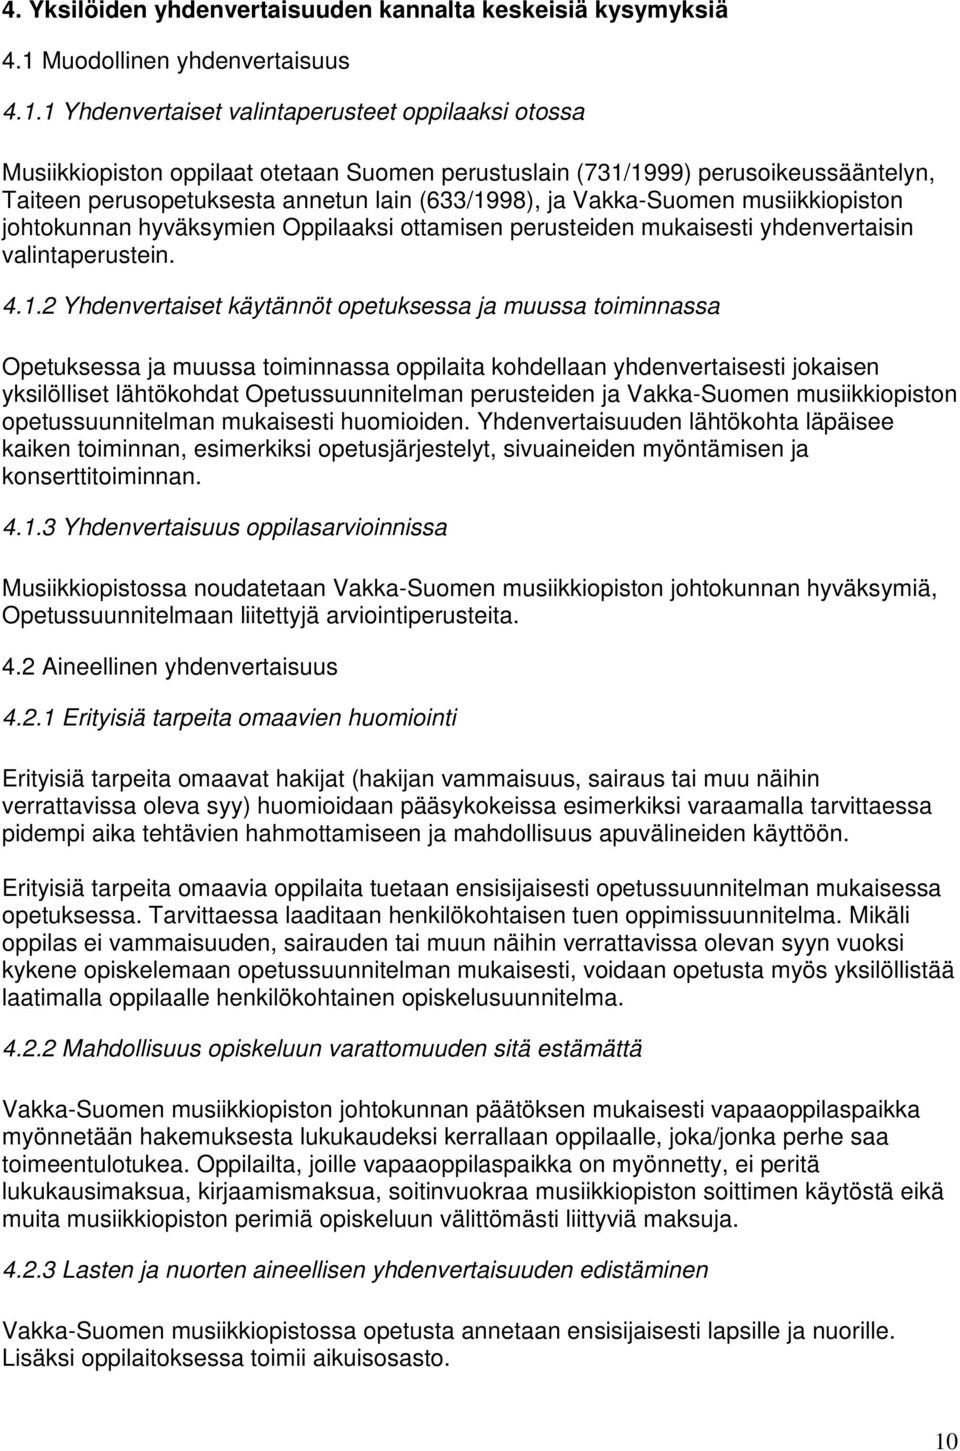 1 Yhdenvertaiset valintaperusteet oppilaaksi otossa Musiikkiopiston oppilaat otetaan Suomen perustuslain (731/1999) perusoikeussääntelyn, Taiteen perusopetuksesta annetun lain (633/1998), ja